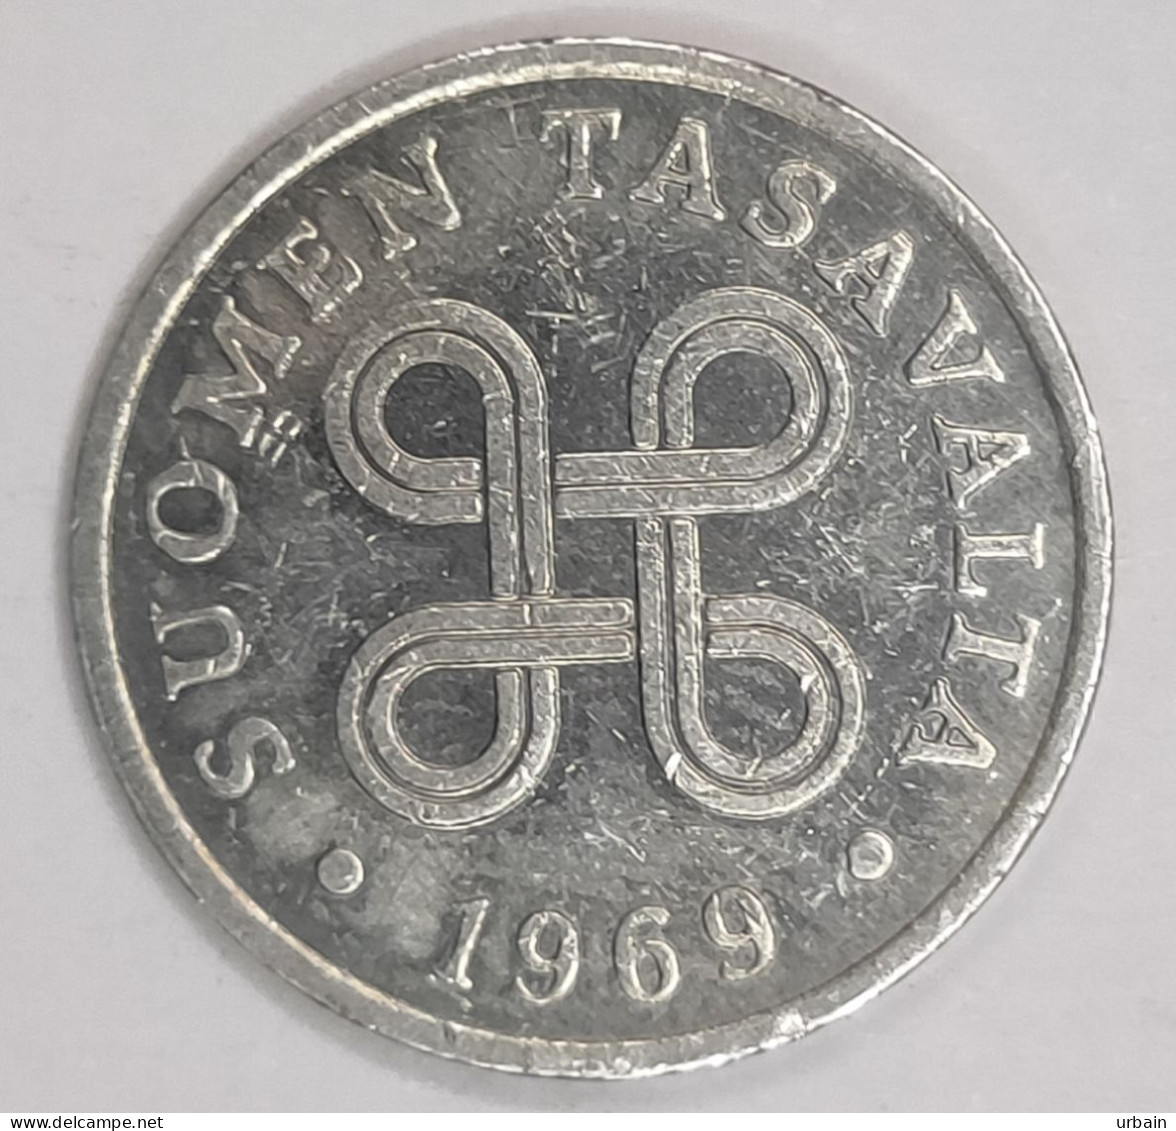 4x Coins - Finland - From 1963 To 1976 - Republic Of Finland (Suomi) - Finlandia